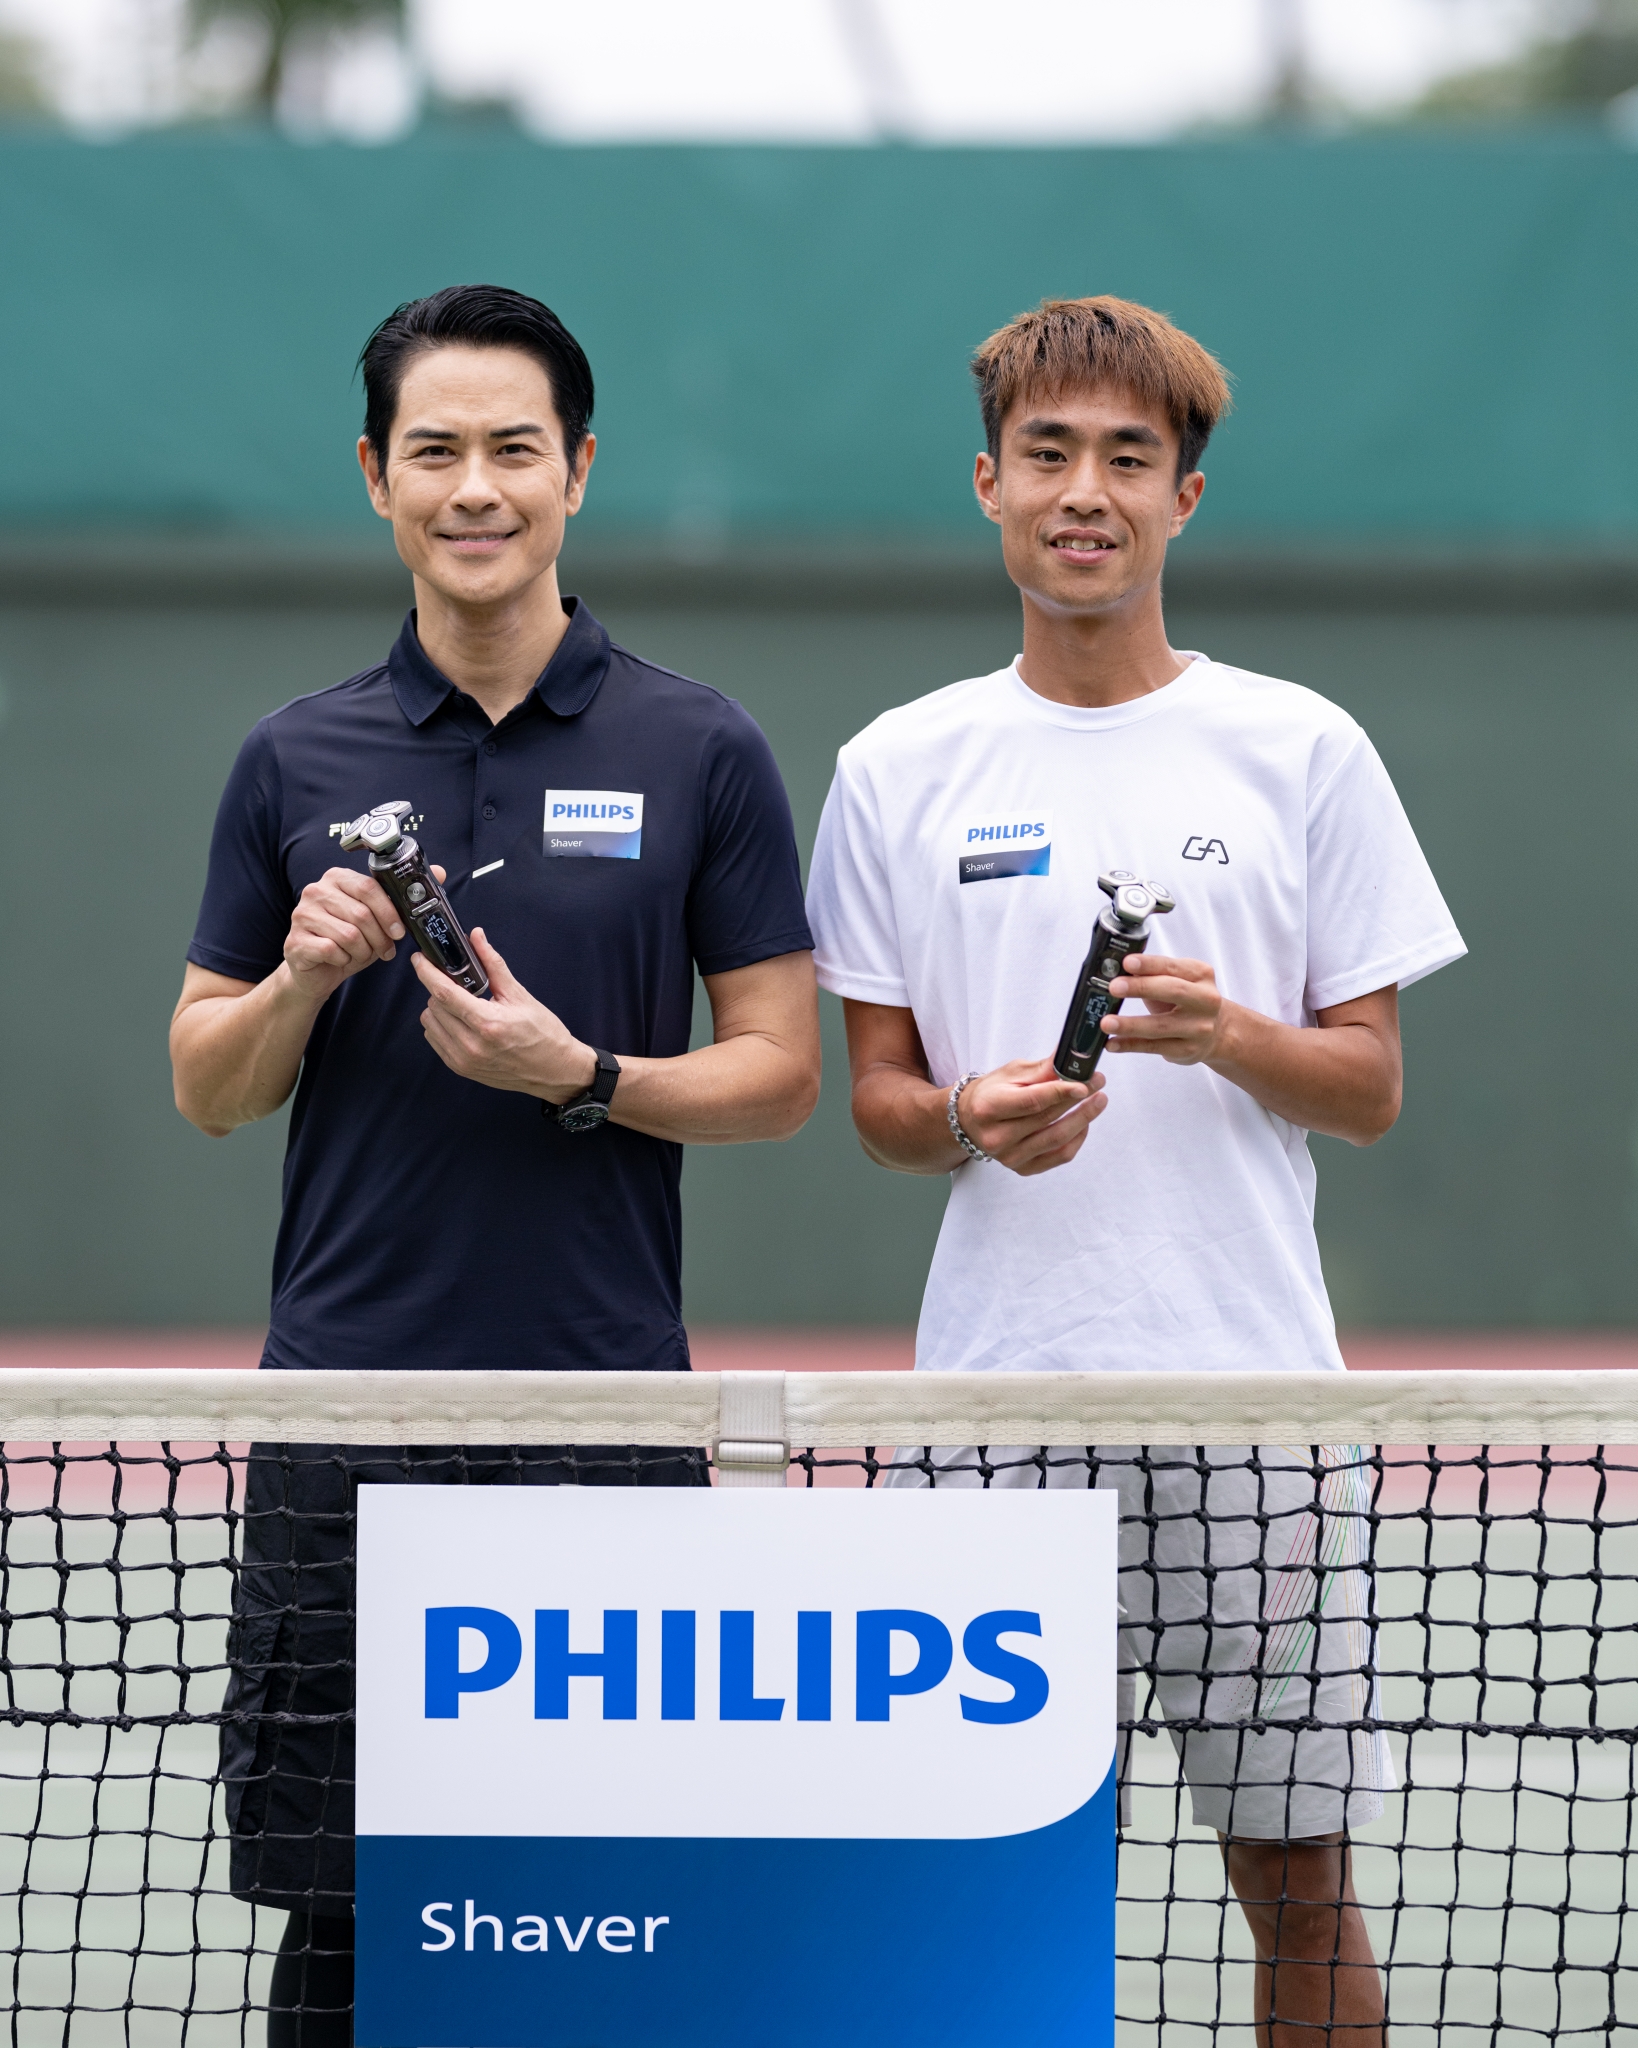 「付出時間和勤力令自己追求更高的成就！」Philips Shaver X 鄭嘉穎 X 香港男子網球運動員王康傑專訪